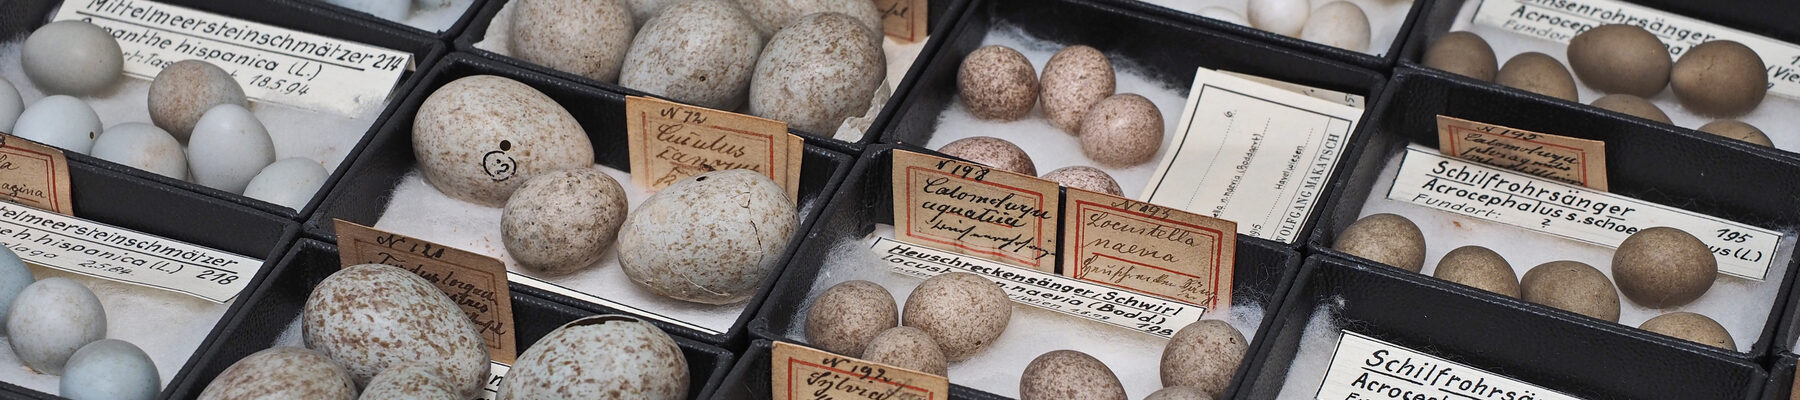 Die Ochs'sche Eiersammlung - viele Eier in kleinen Kästchen mit Beschriftung